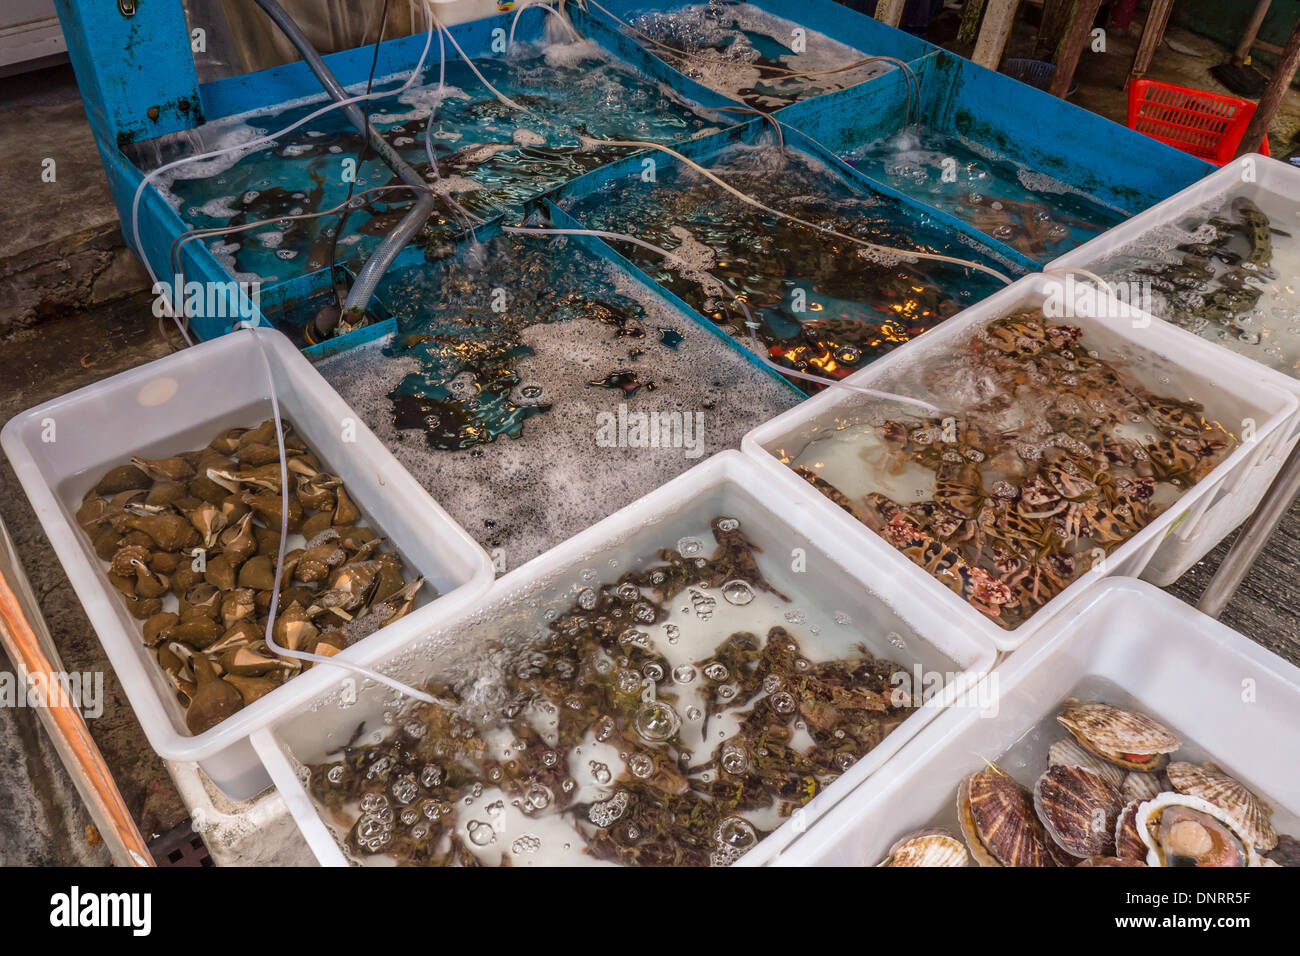 Seafood Market, Lantau Island, Hong Kong, China Stock Photo